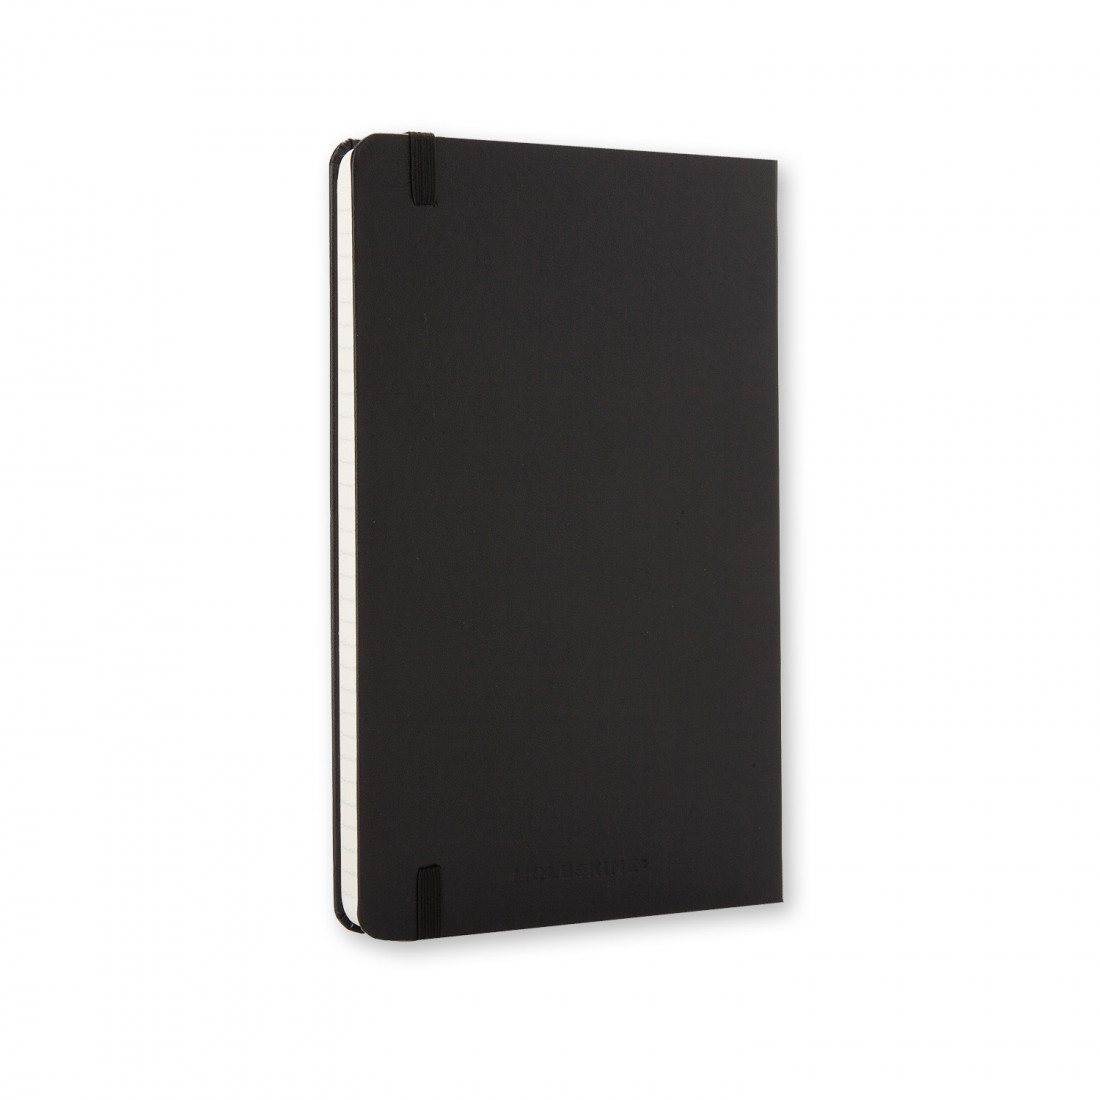 Notebook Extra Large 19x25 Ruled Black Hard Cover Moleskine